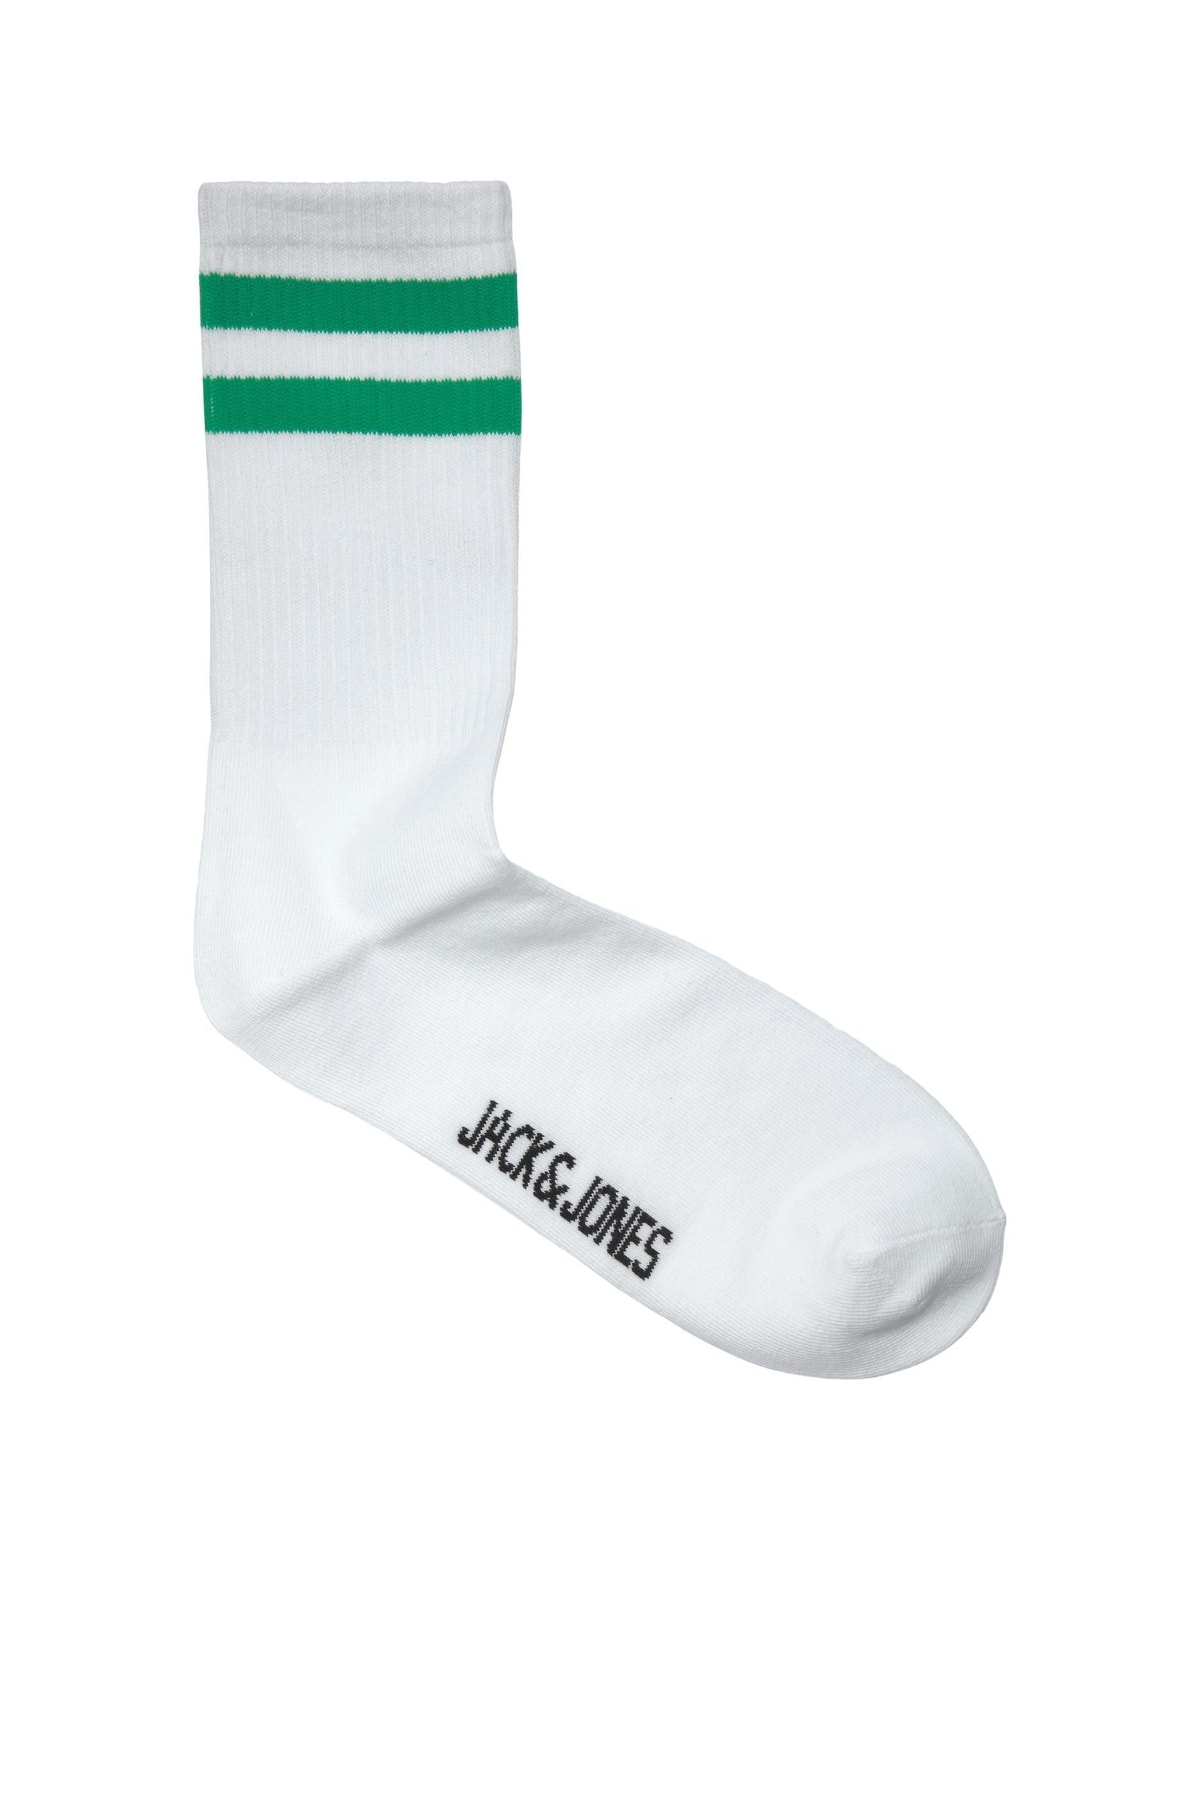 Jack & Jones Jack Jones Fury Tennis Sock Erkek Yeşil Çorap 12210540-21